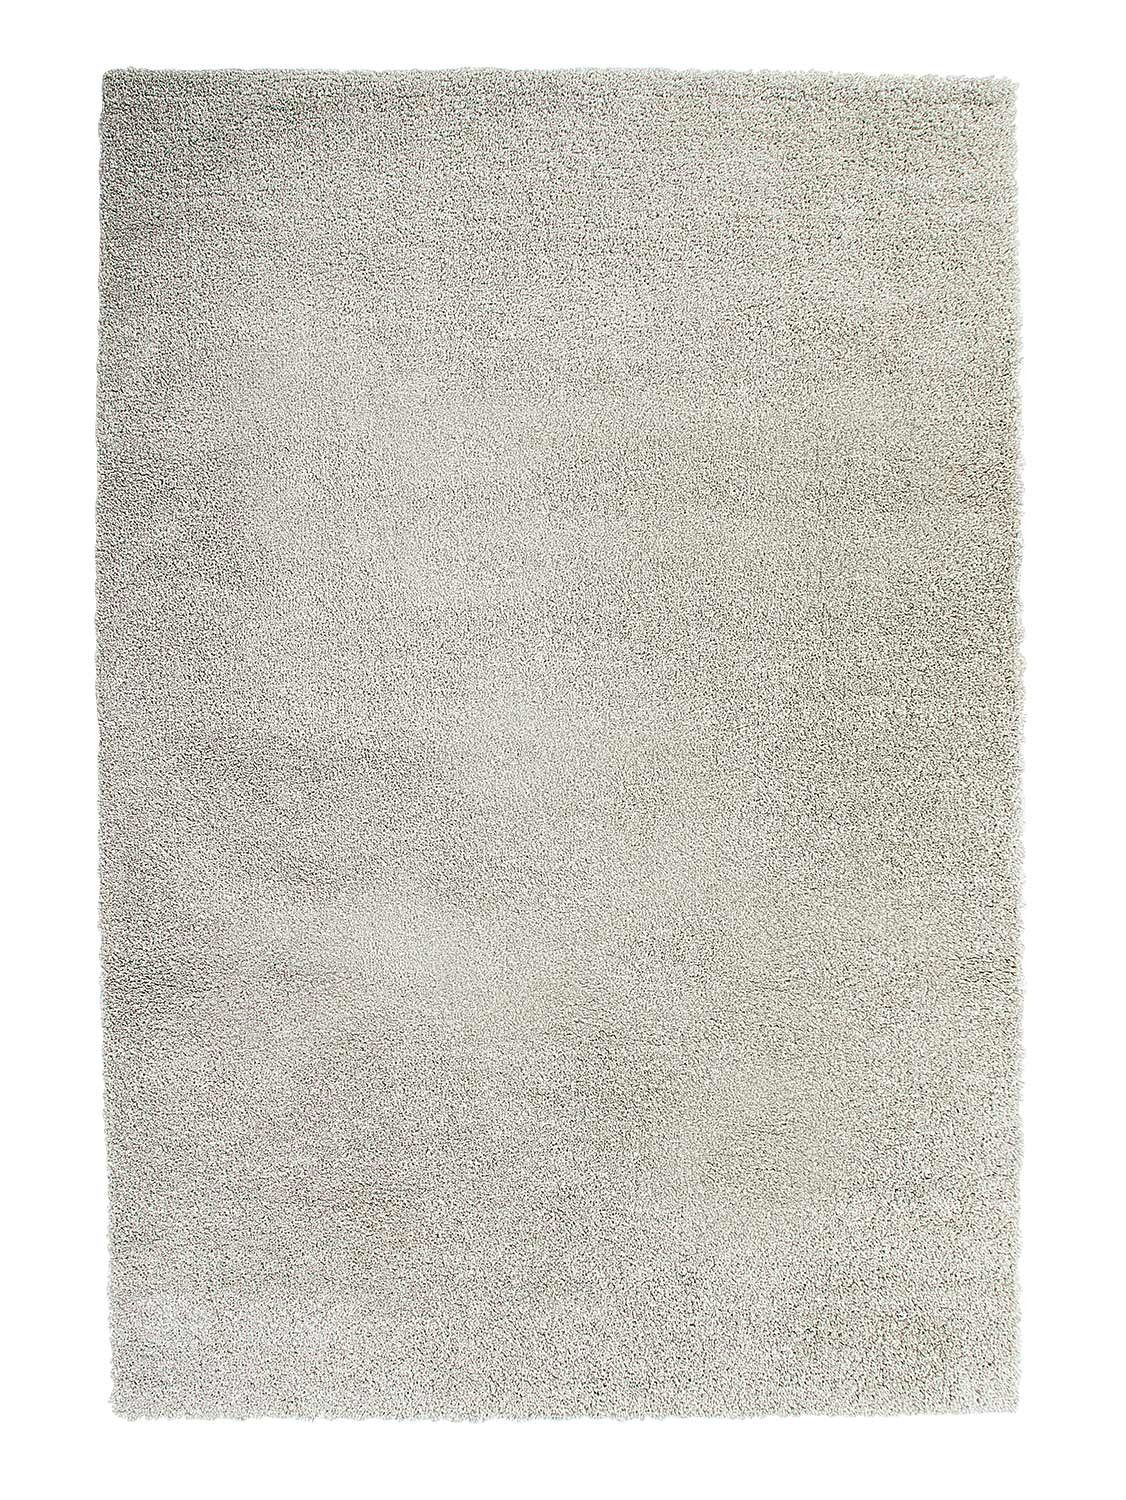 Teppich DELIGHT COSY, Polypropylen, Grau, 200 x 290 cm, Balta Rugs, rechteckig, Höhe: 22 mm